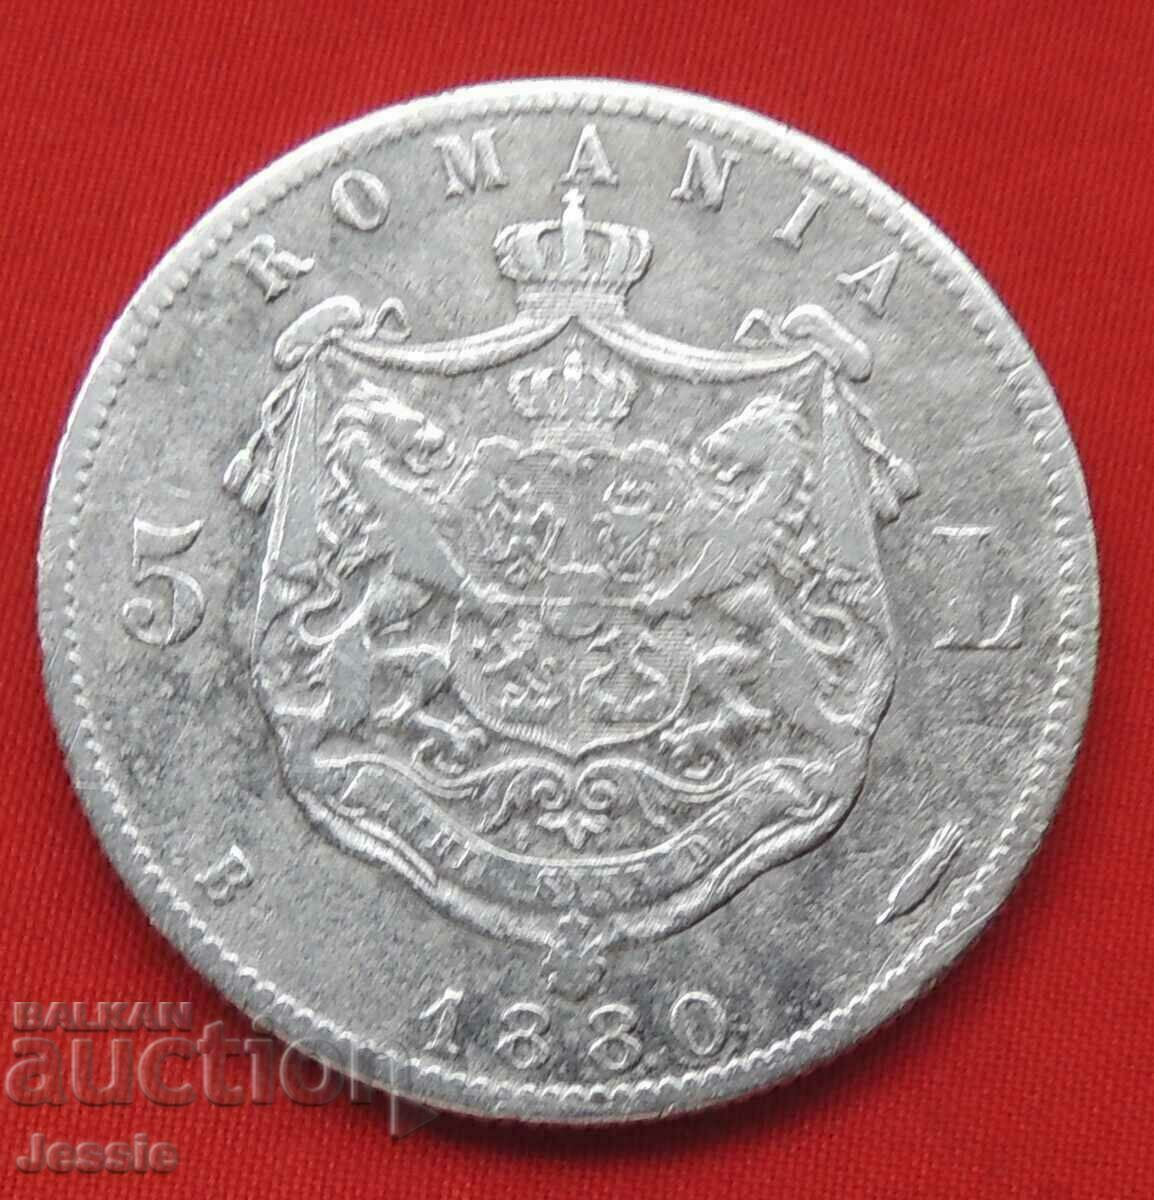 5 lei 1880 Romania silver - DOMNUL